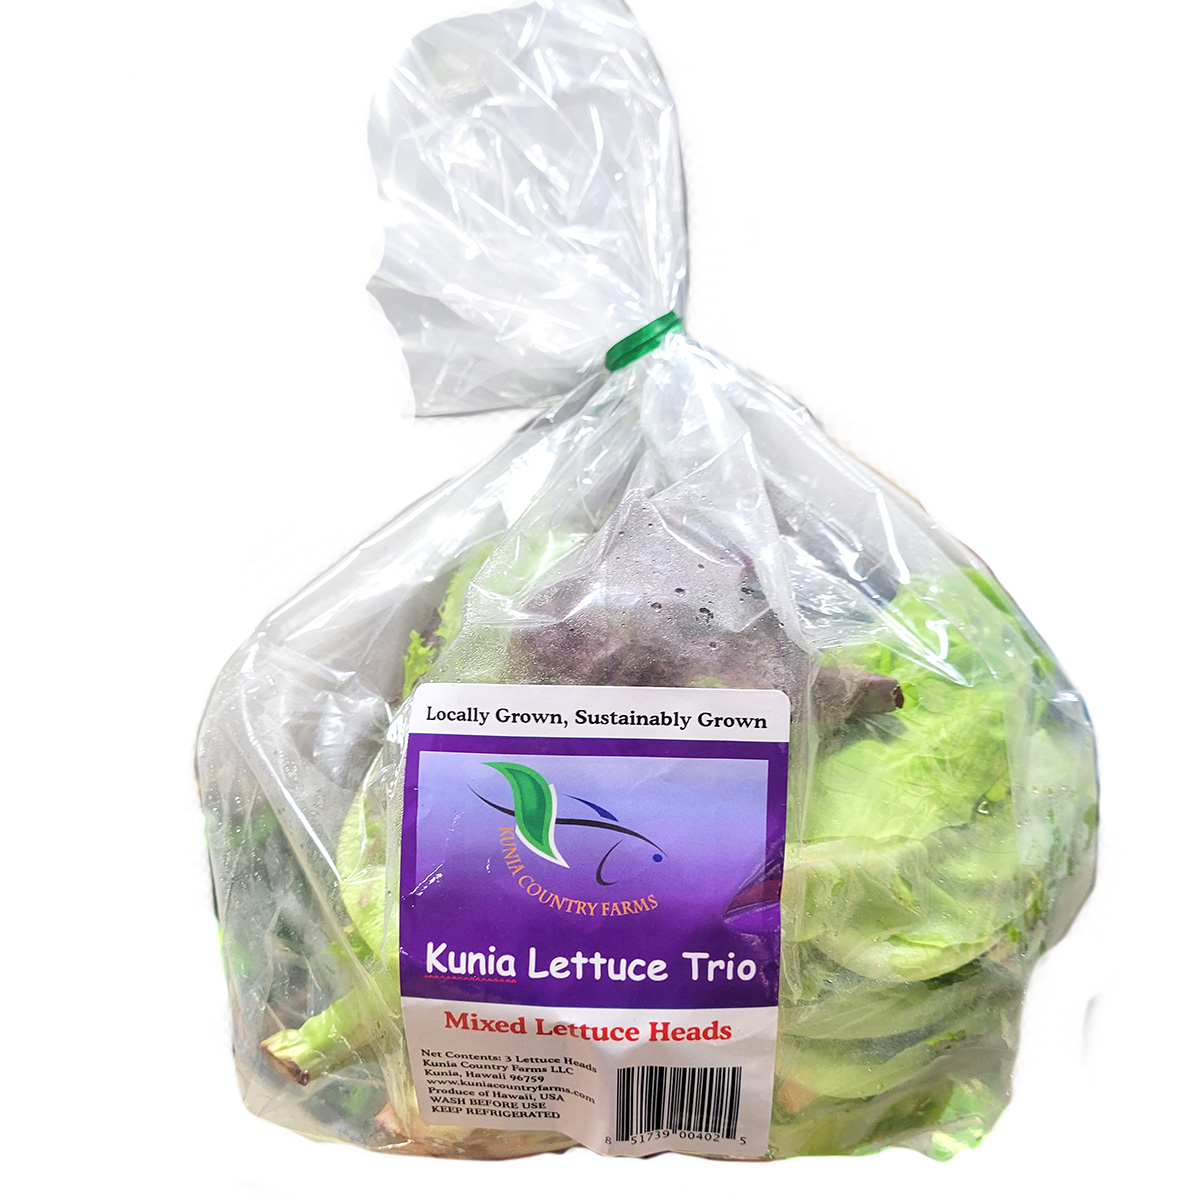 Kunia Lettuce Trio